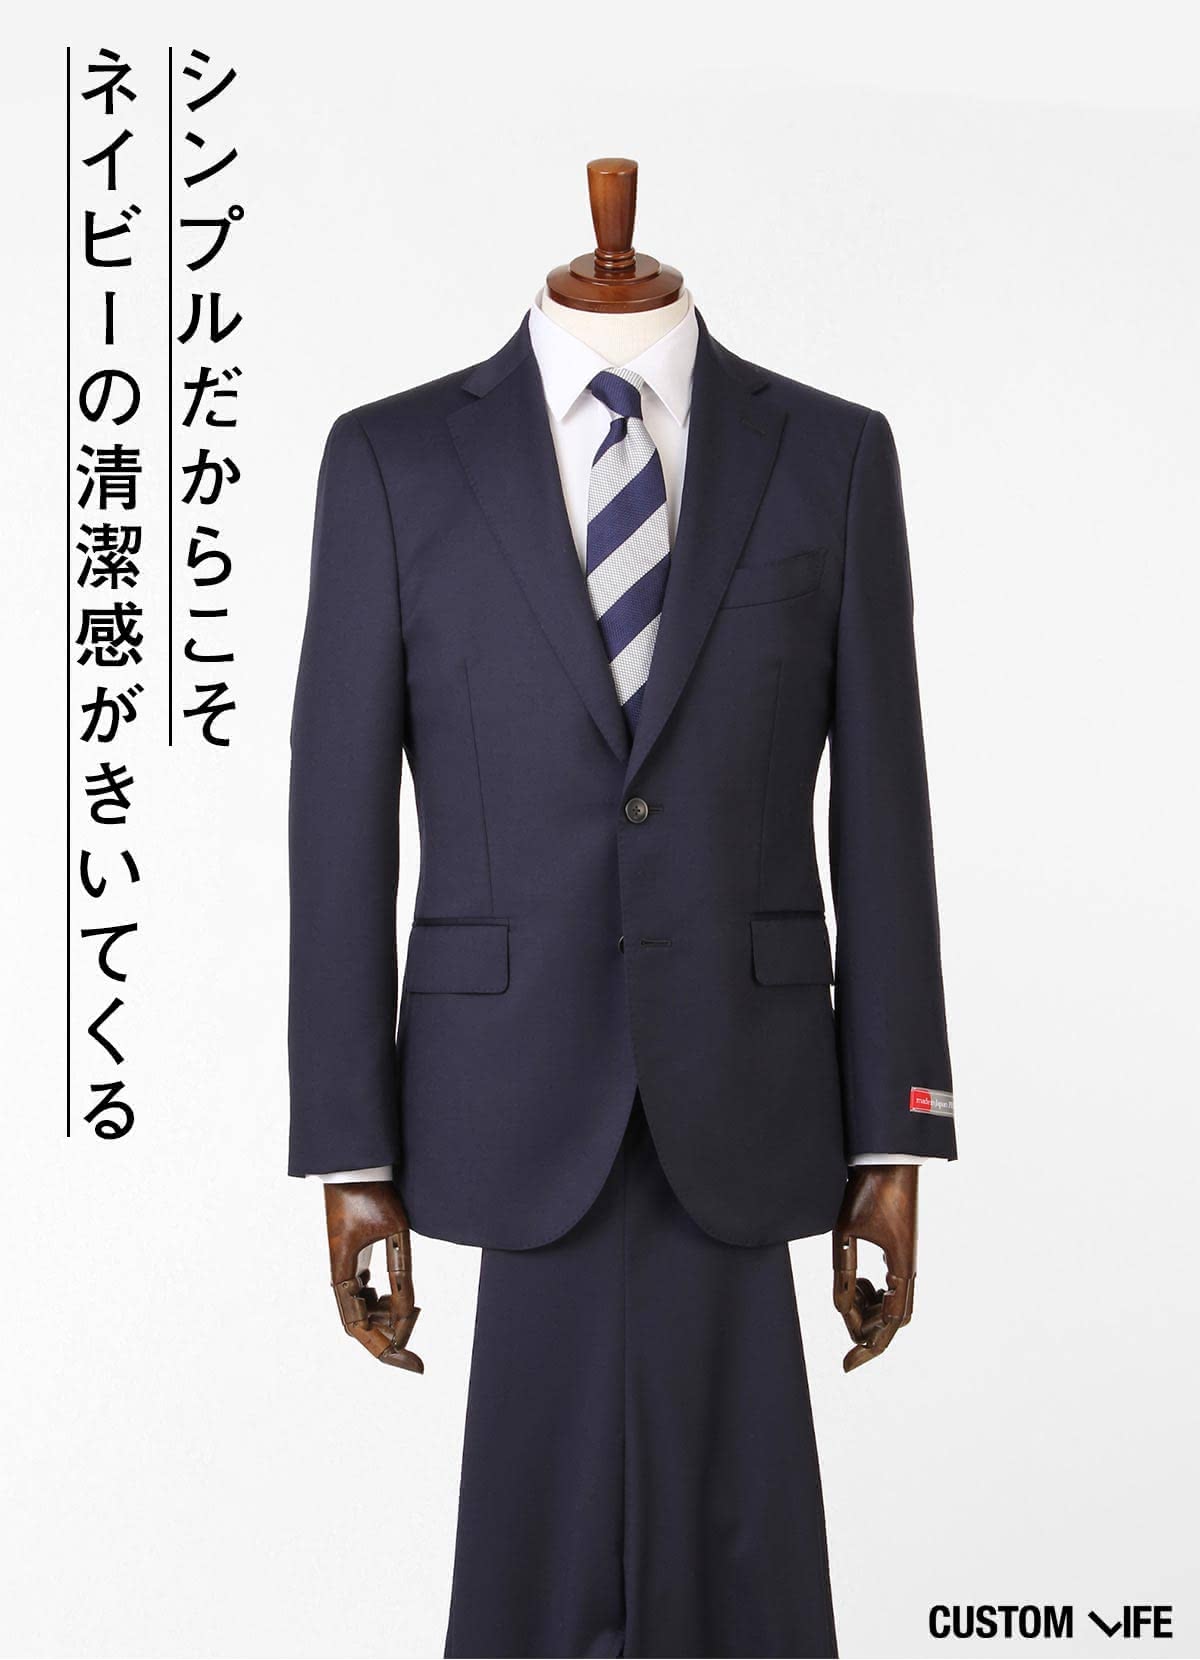 スーツのかっこいい着こなし方 すぐに真似できるお手本コーデ9選 Customlife カスタムライフ